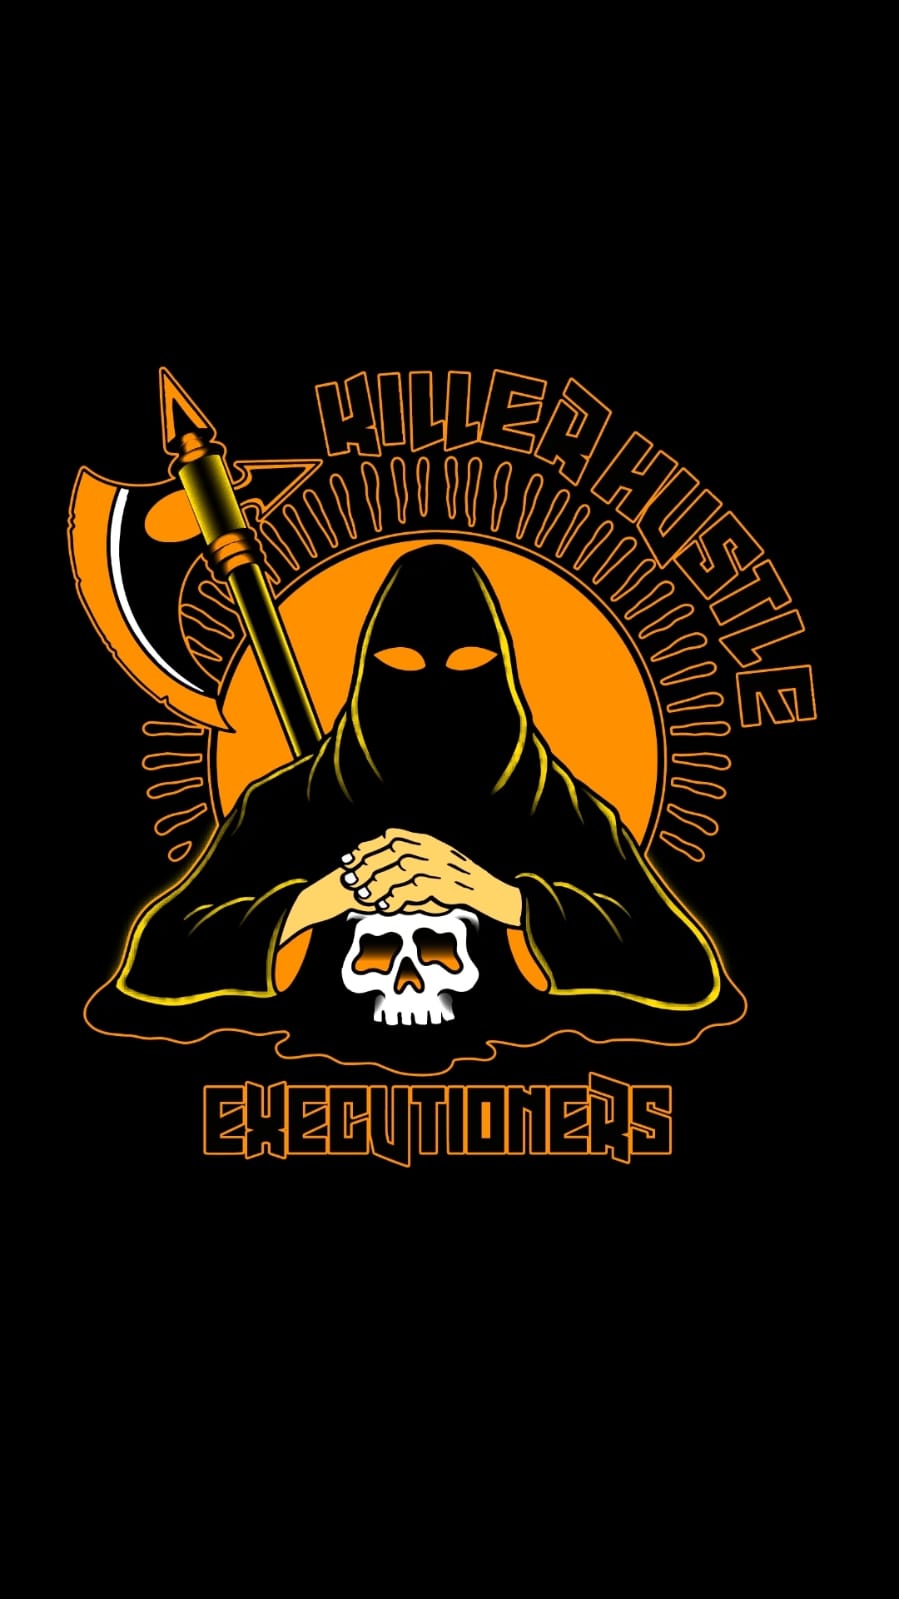 Killer Hustle Inc. - The Executioner